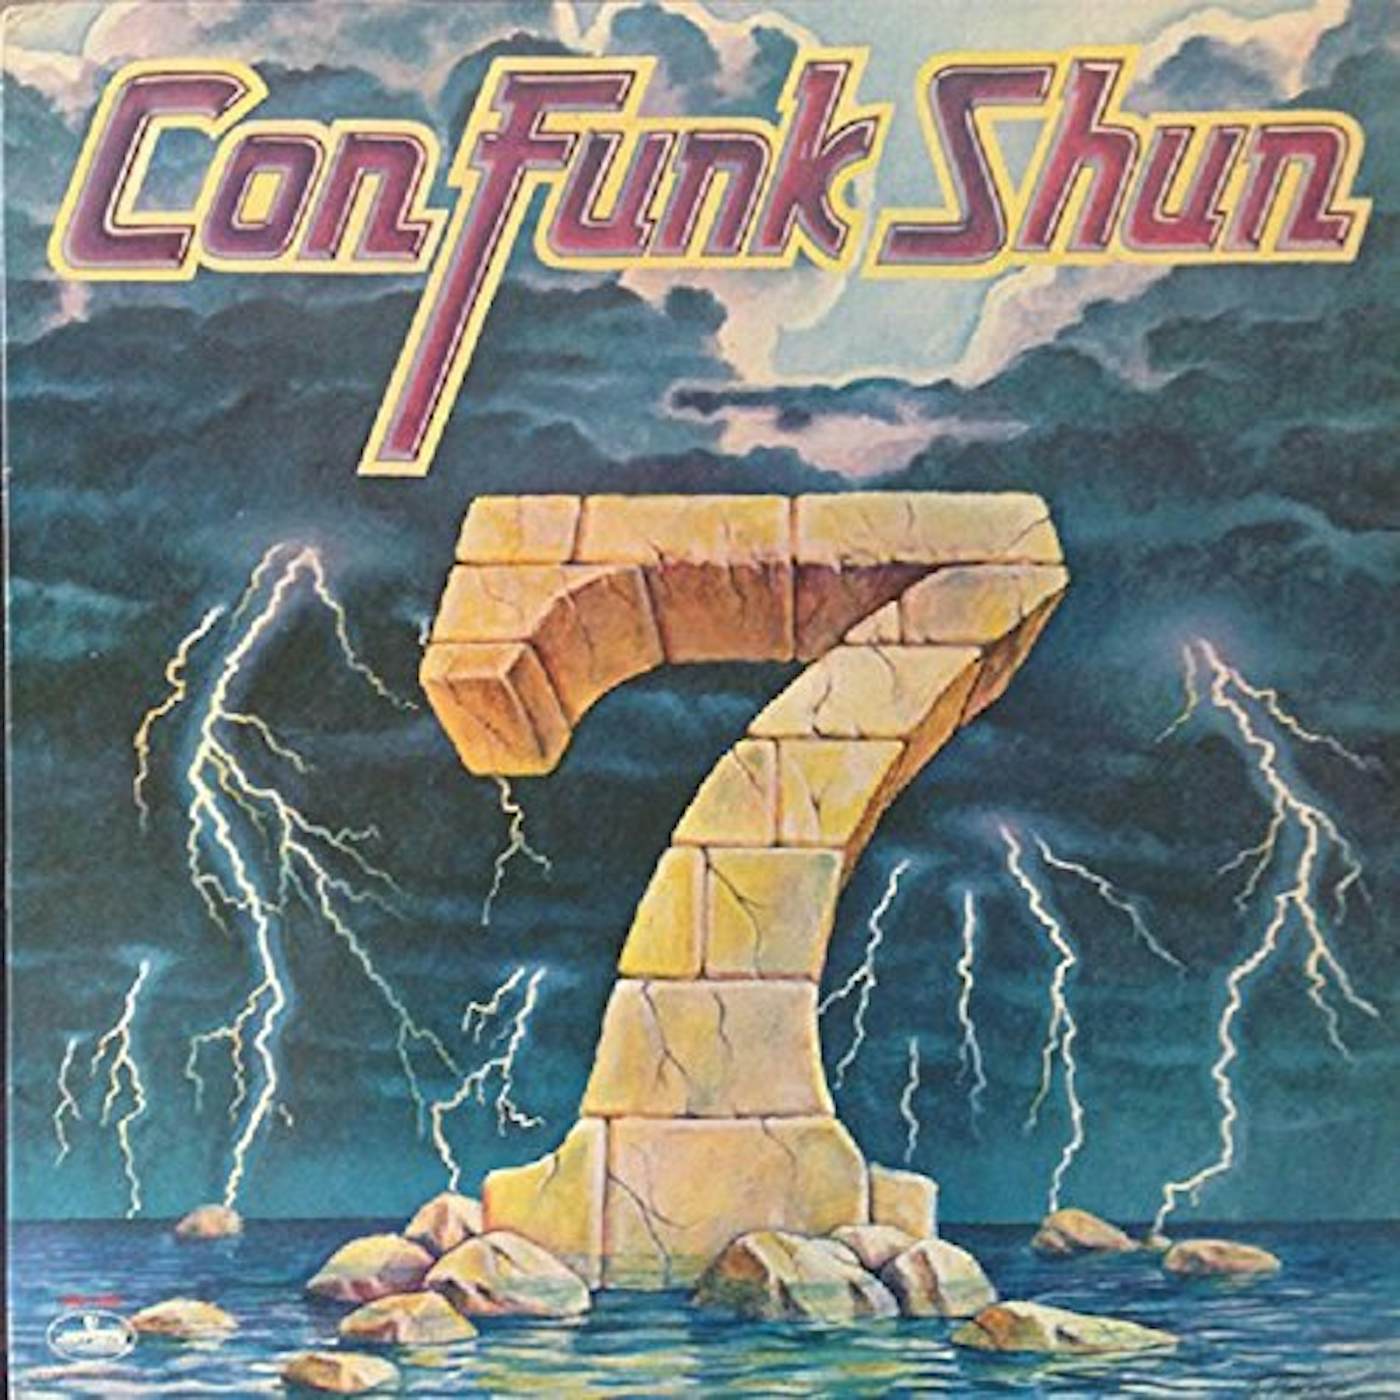 CON FUNK SHUN - 7 (DISCO FEVER) CD